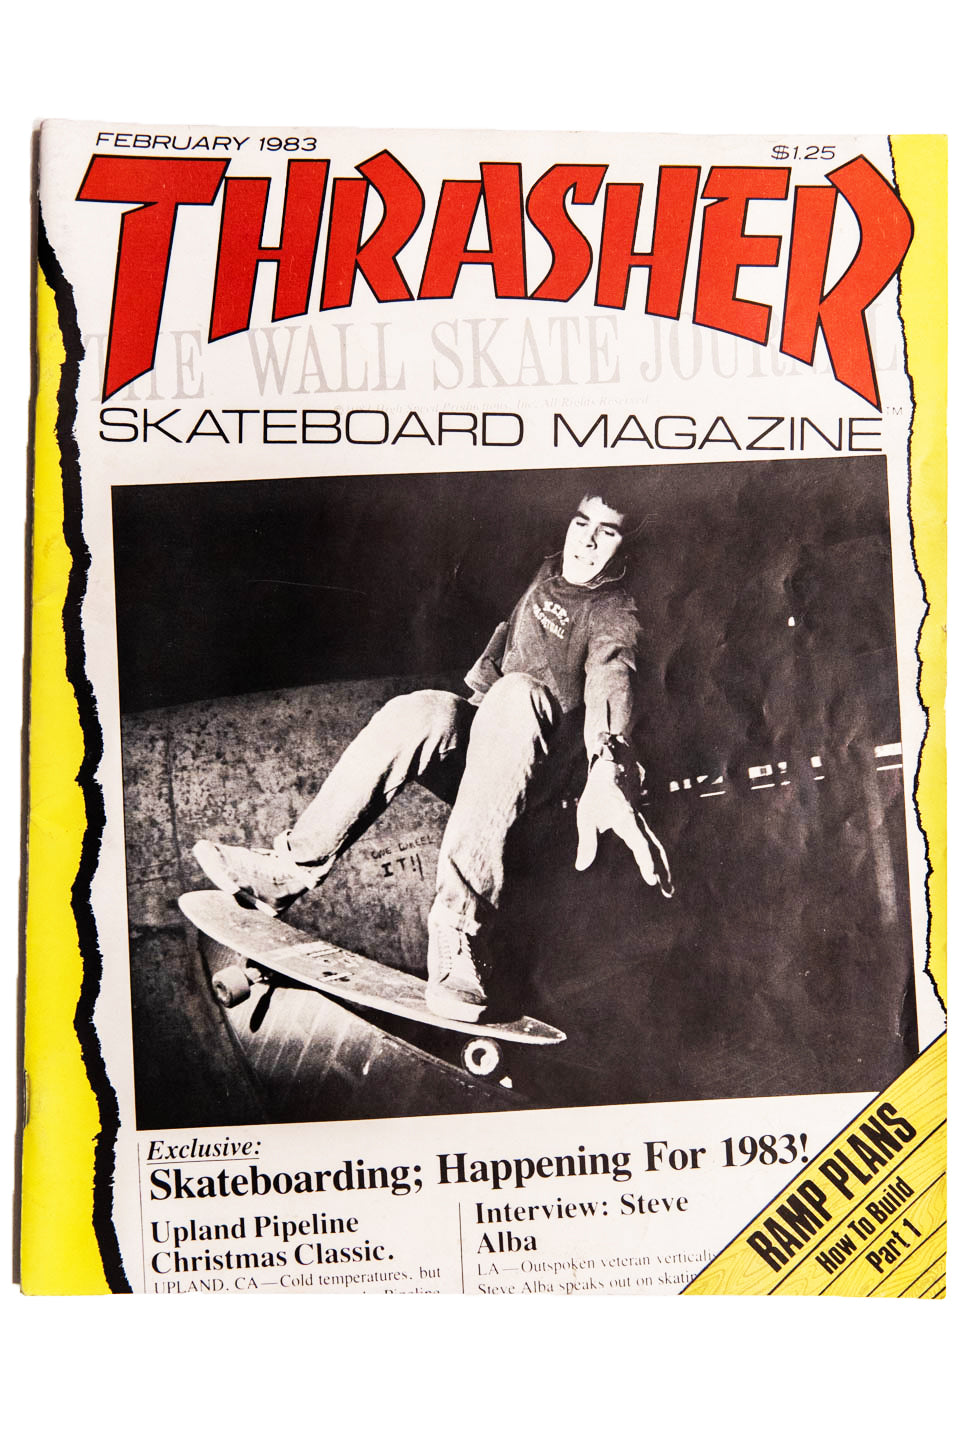 THRASHER MAGAZINE FEBRUARY 1983